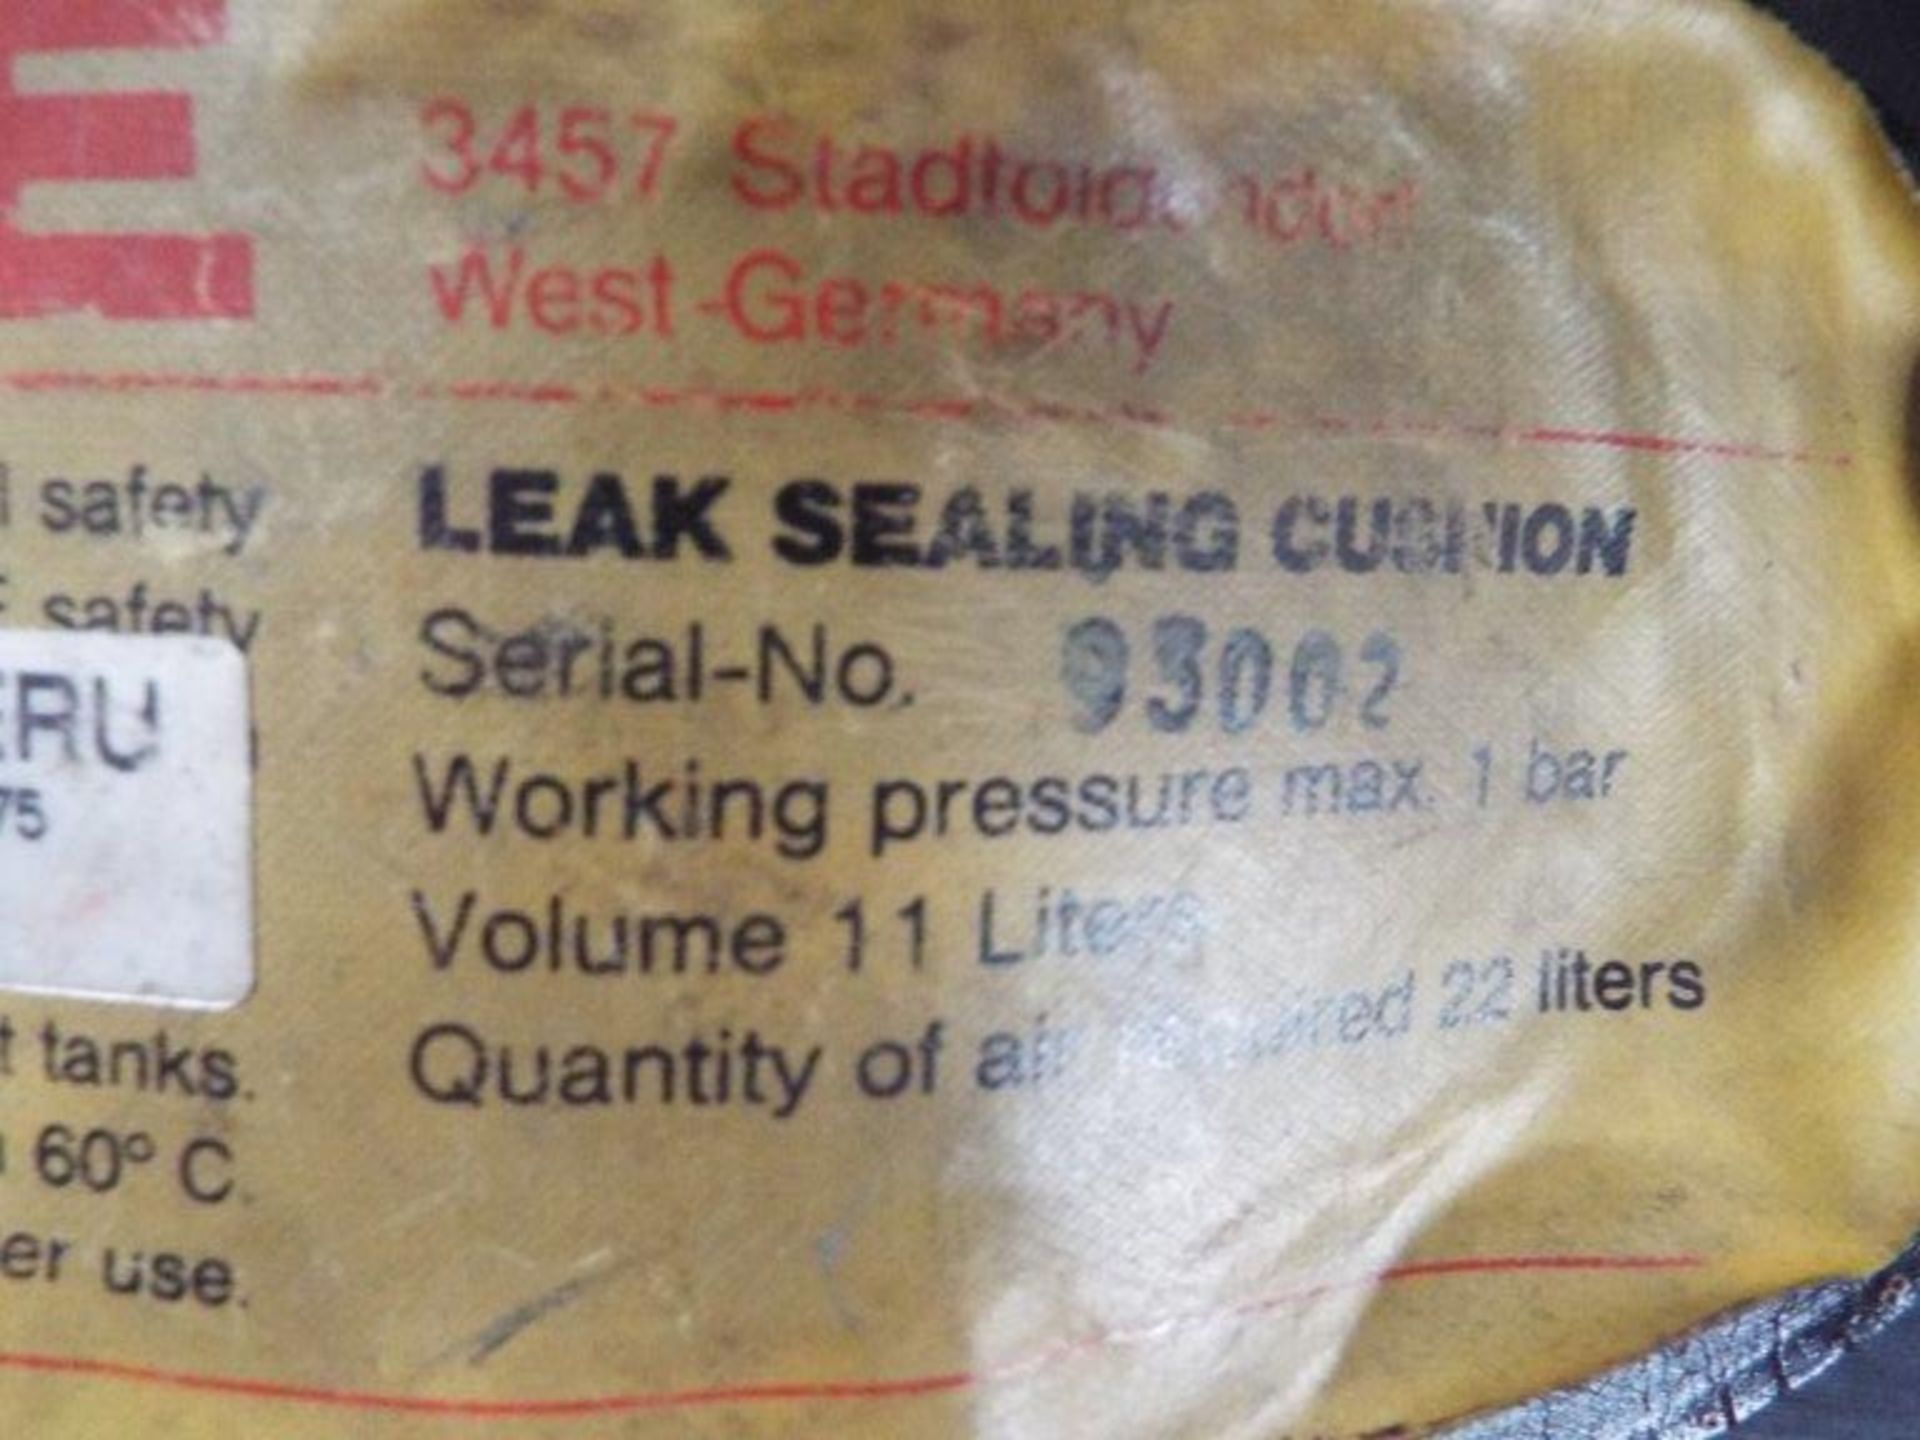 Lampe 11L Pneumatic Leak Sealing Cushion Set - Bild 5 aus 8